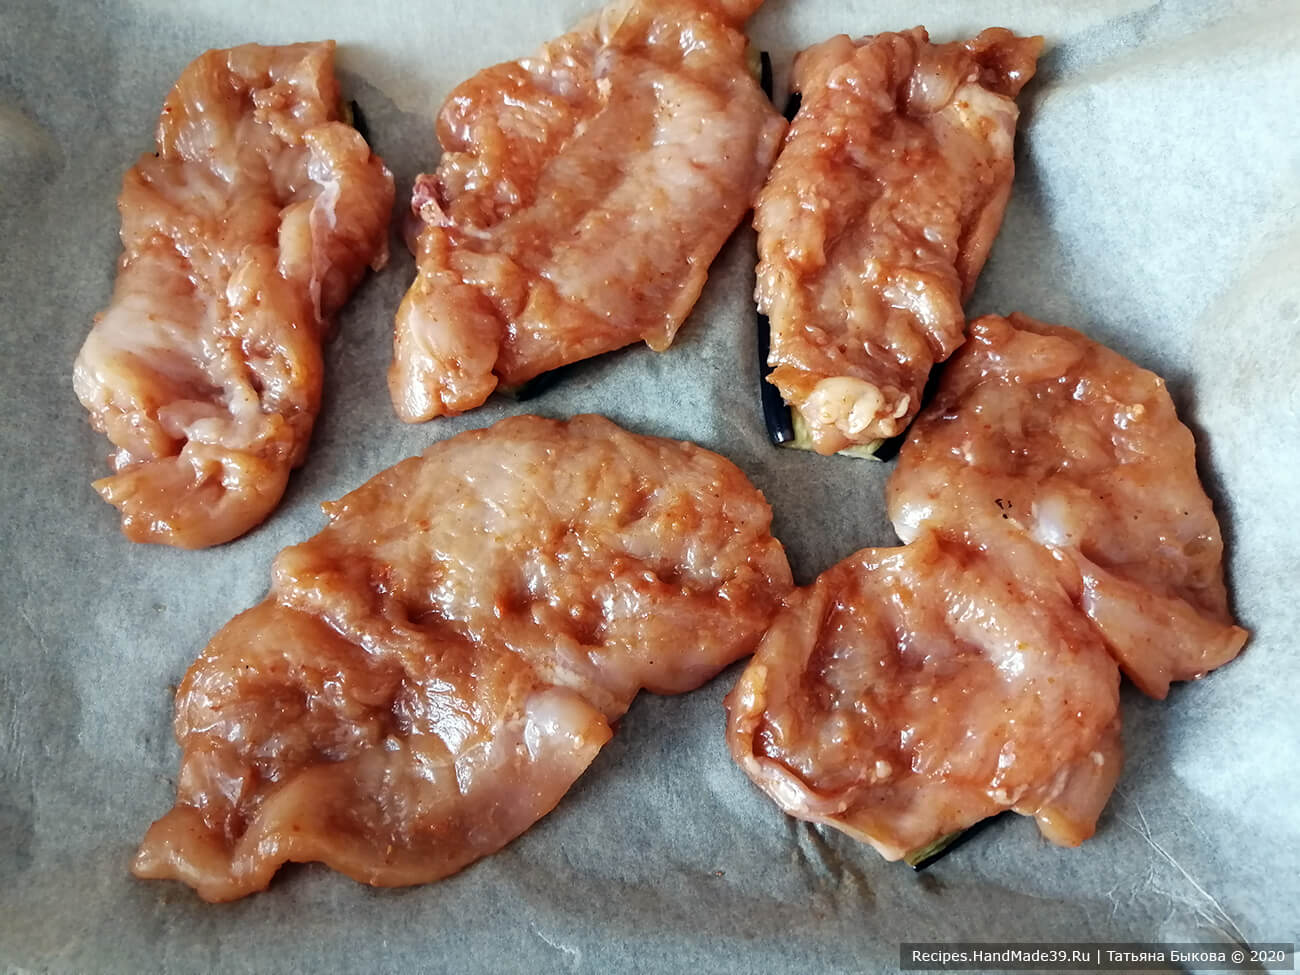 Сборка шашлычков: кладём подготовленное куриное филе на баклажановый слайс